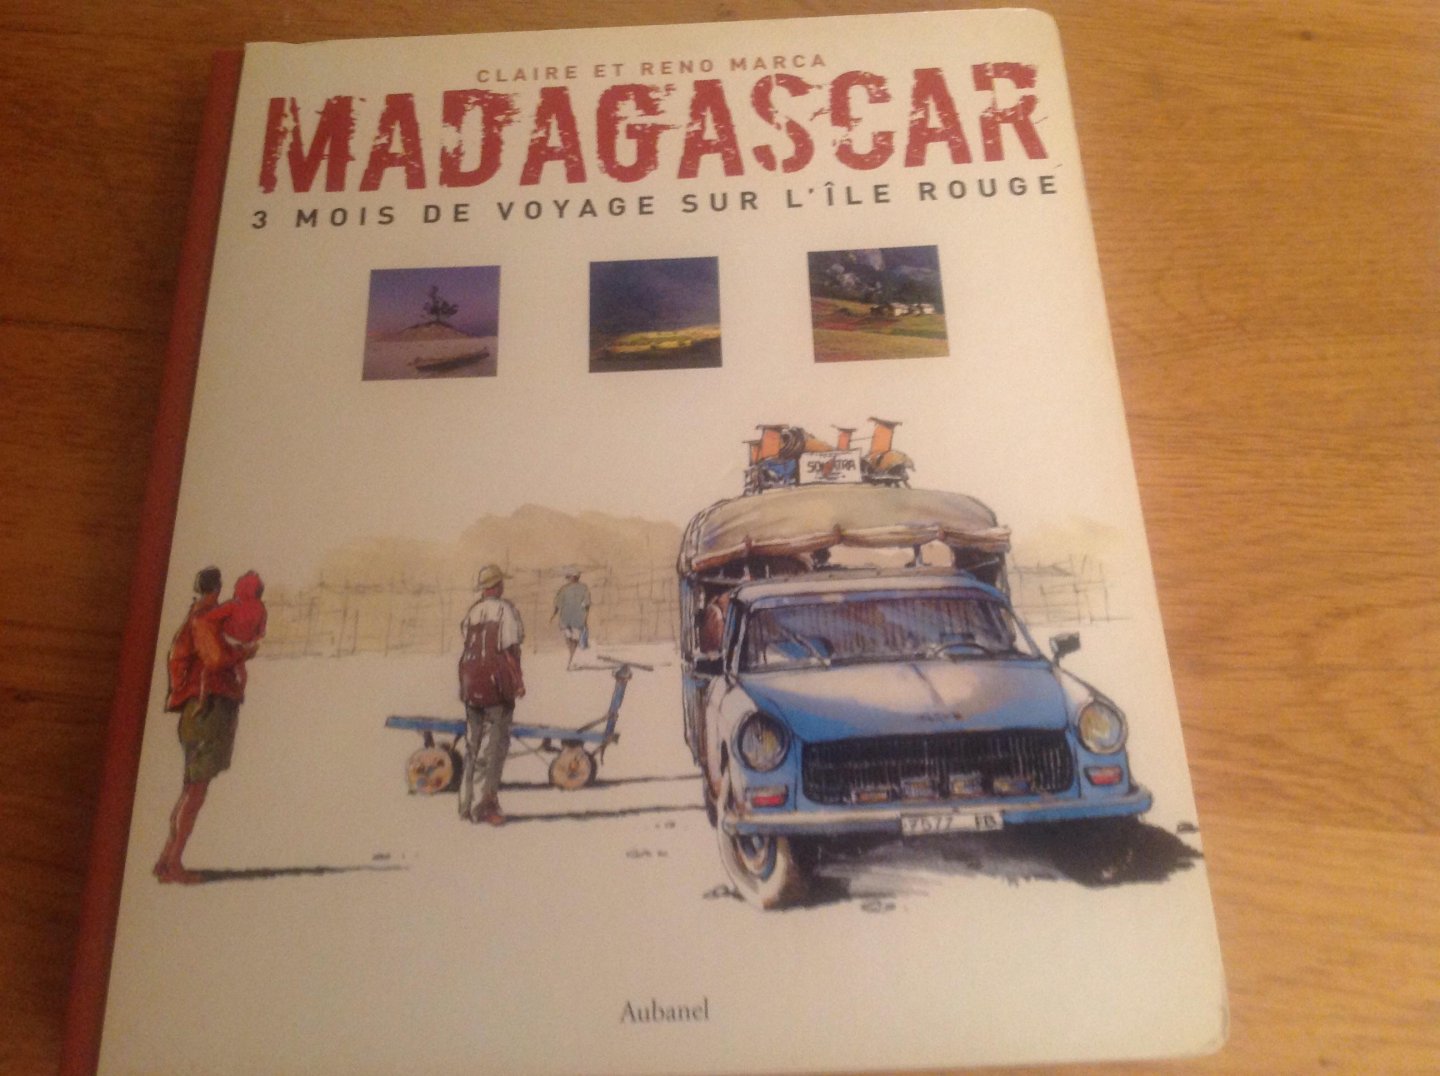 Claire et Reno Marca - Madagascar 3 mois de Voyage sur l'île rouge